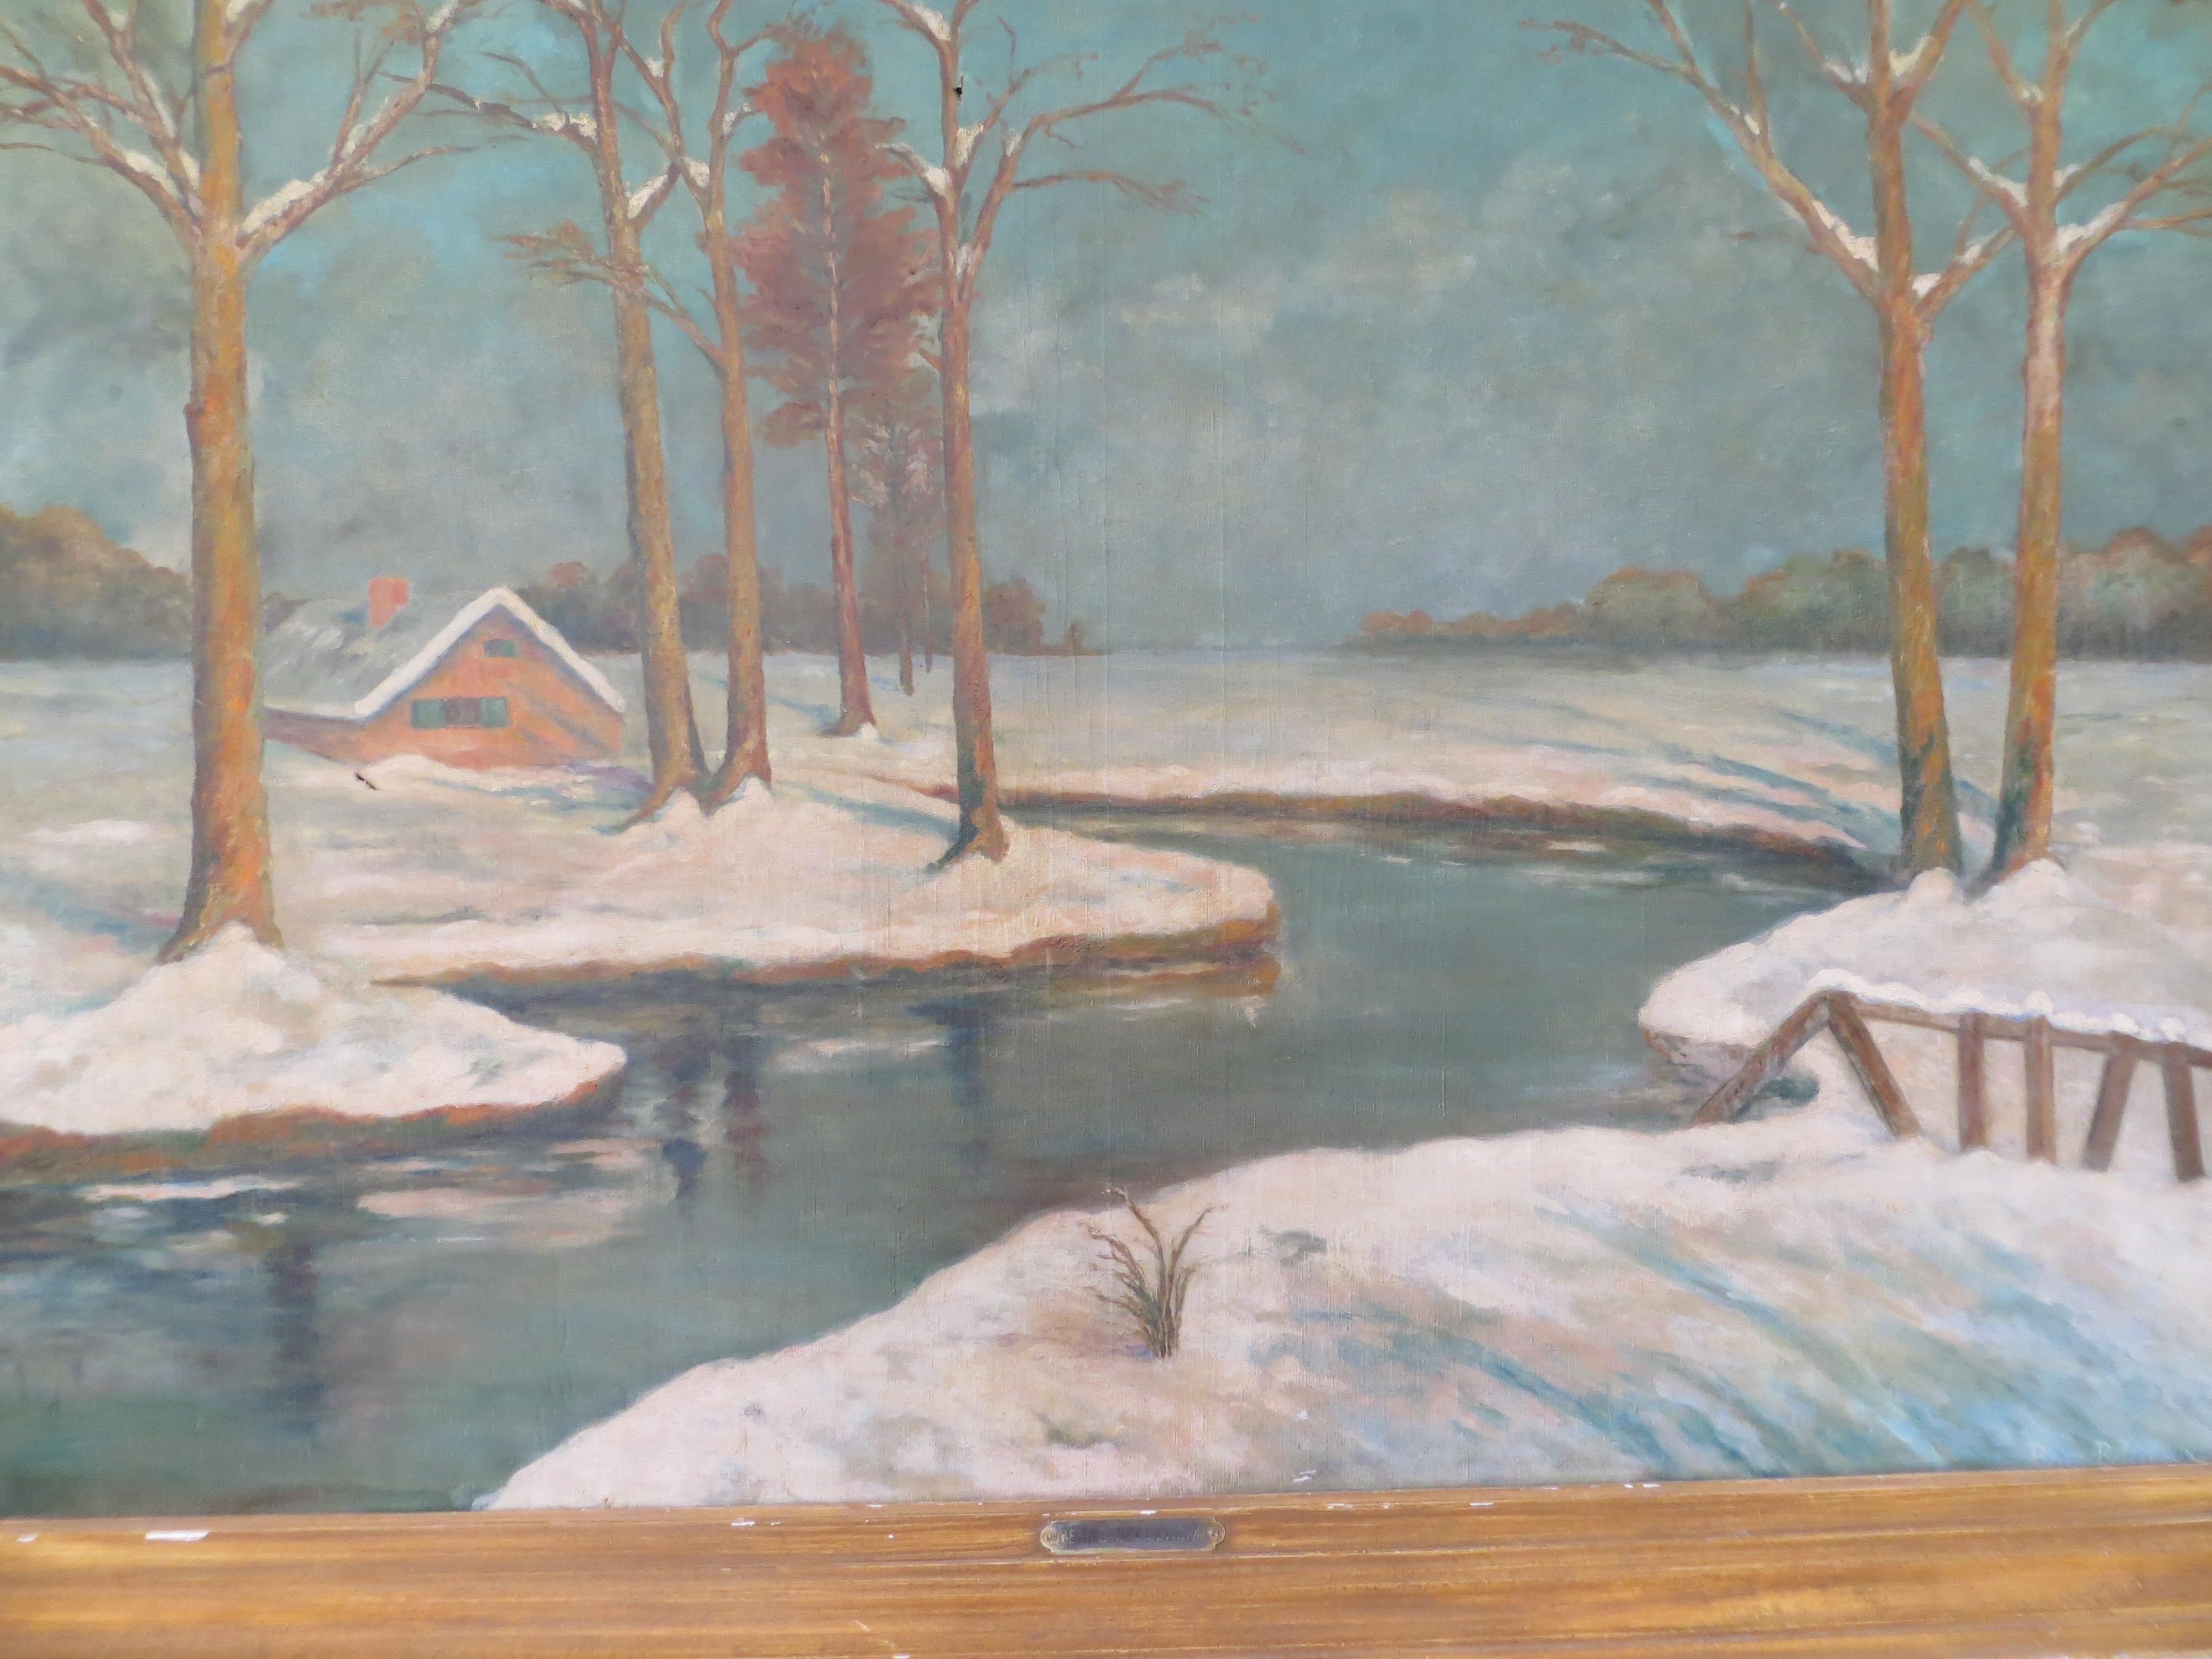 Winterlandschaft aus Winter  (Impressionismus), Painting, von Étienne-Prosper Berne-Bellecour.